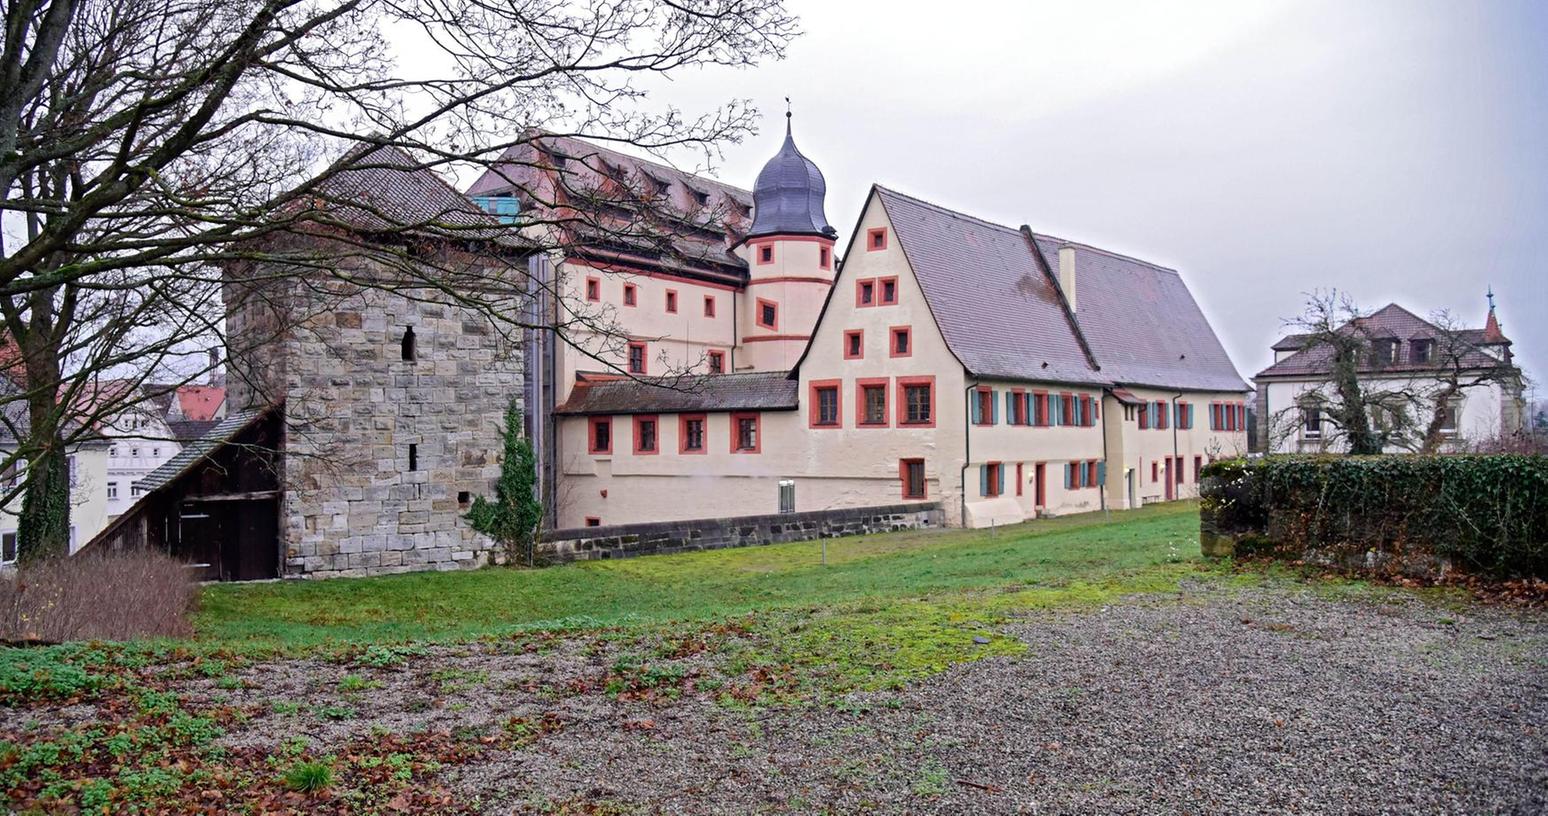 Königsstrand in Forchheim wird weiterentwickelt